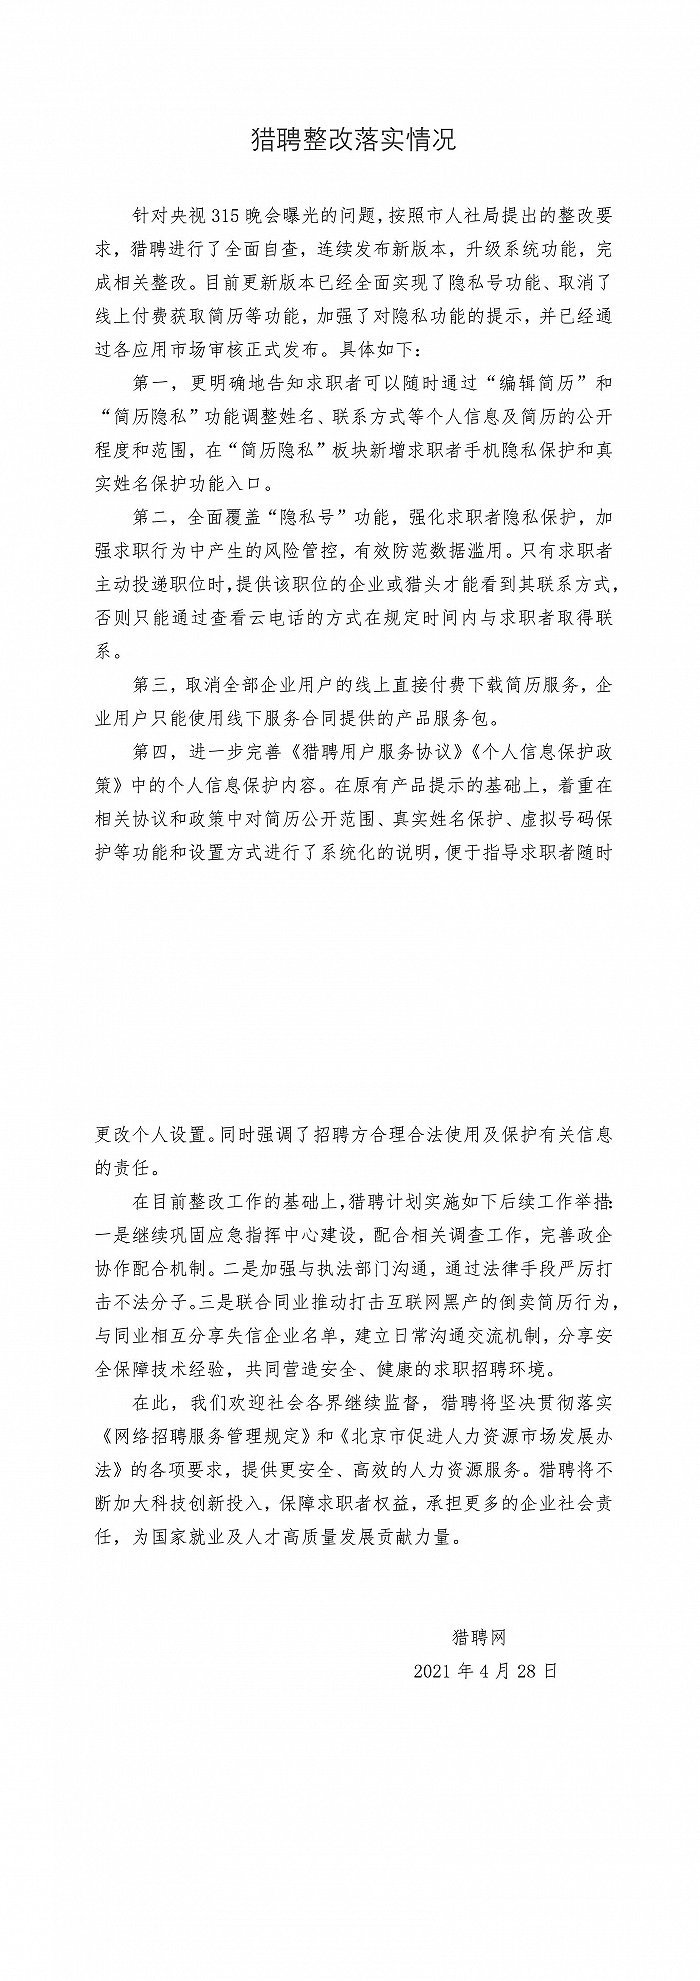 北京人社局公布智联招聘、猎聘整改情况 此前因泄露用户个人简历被约谈